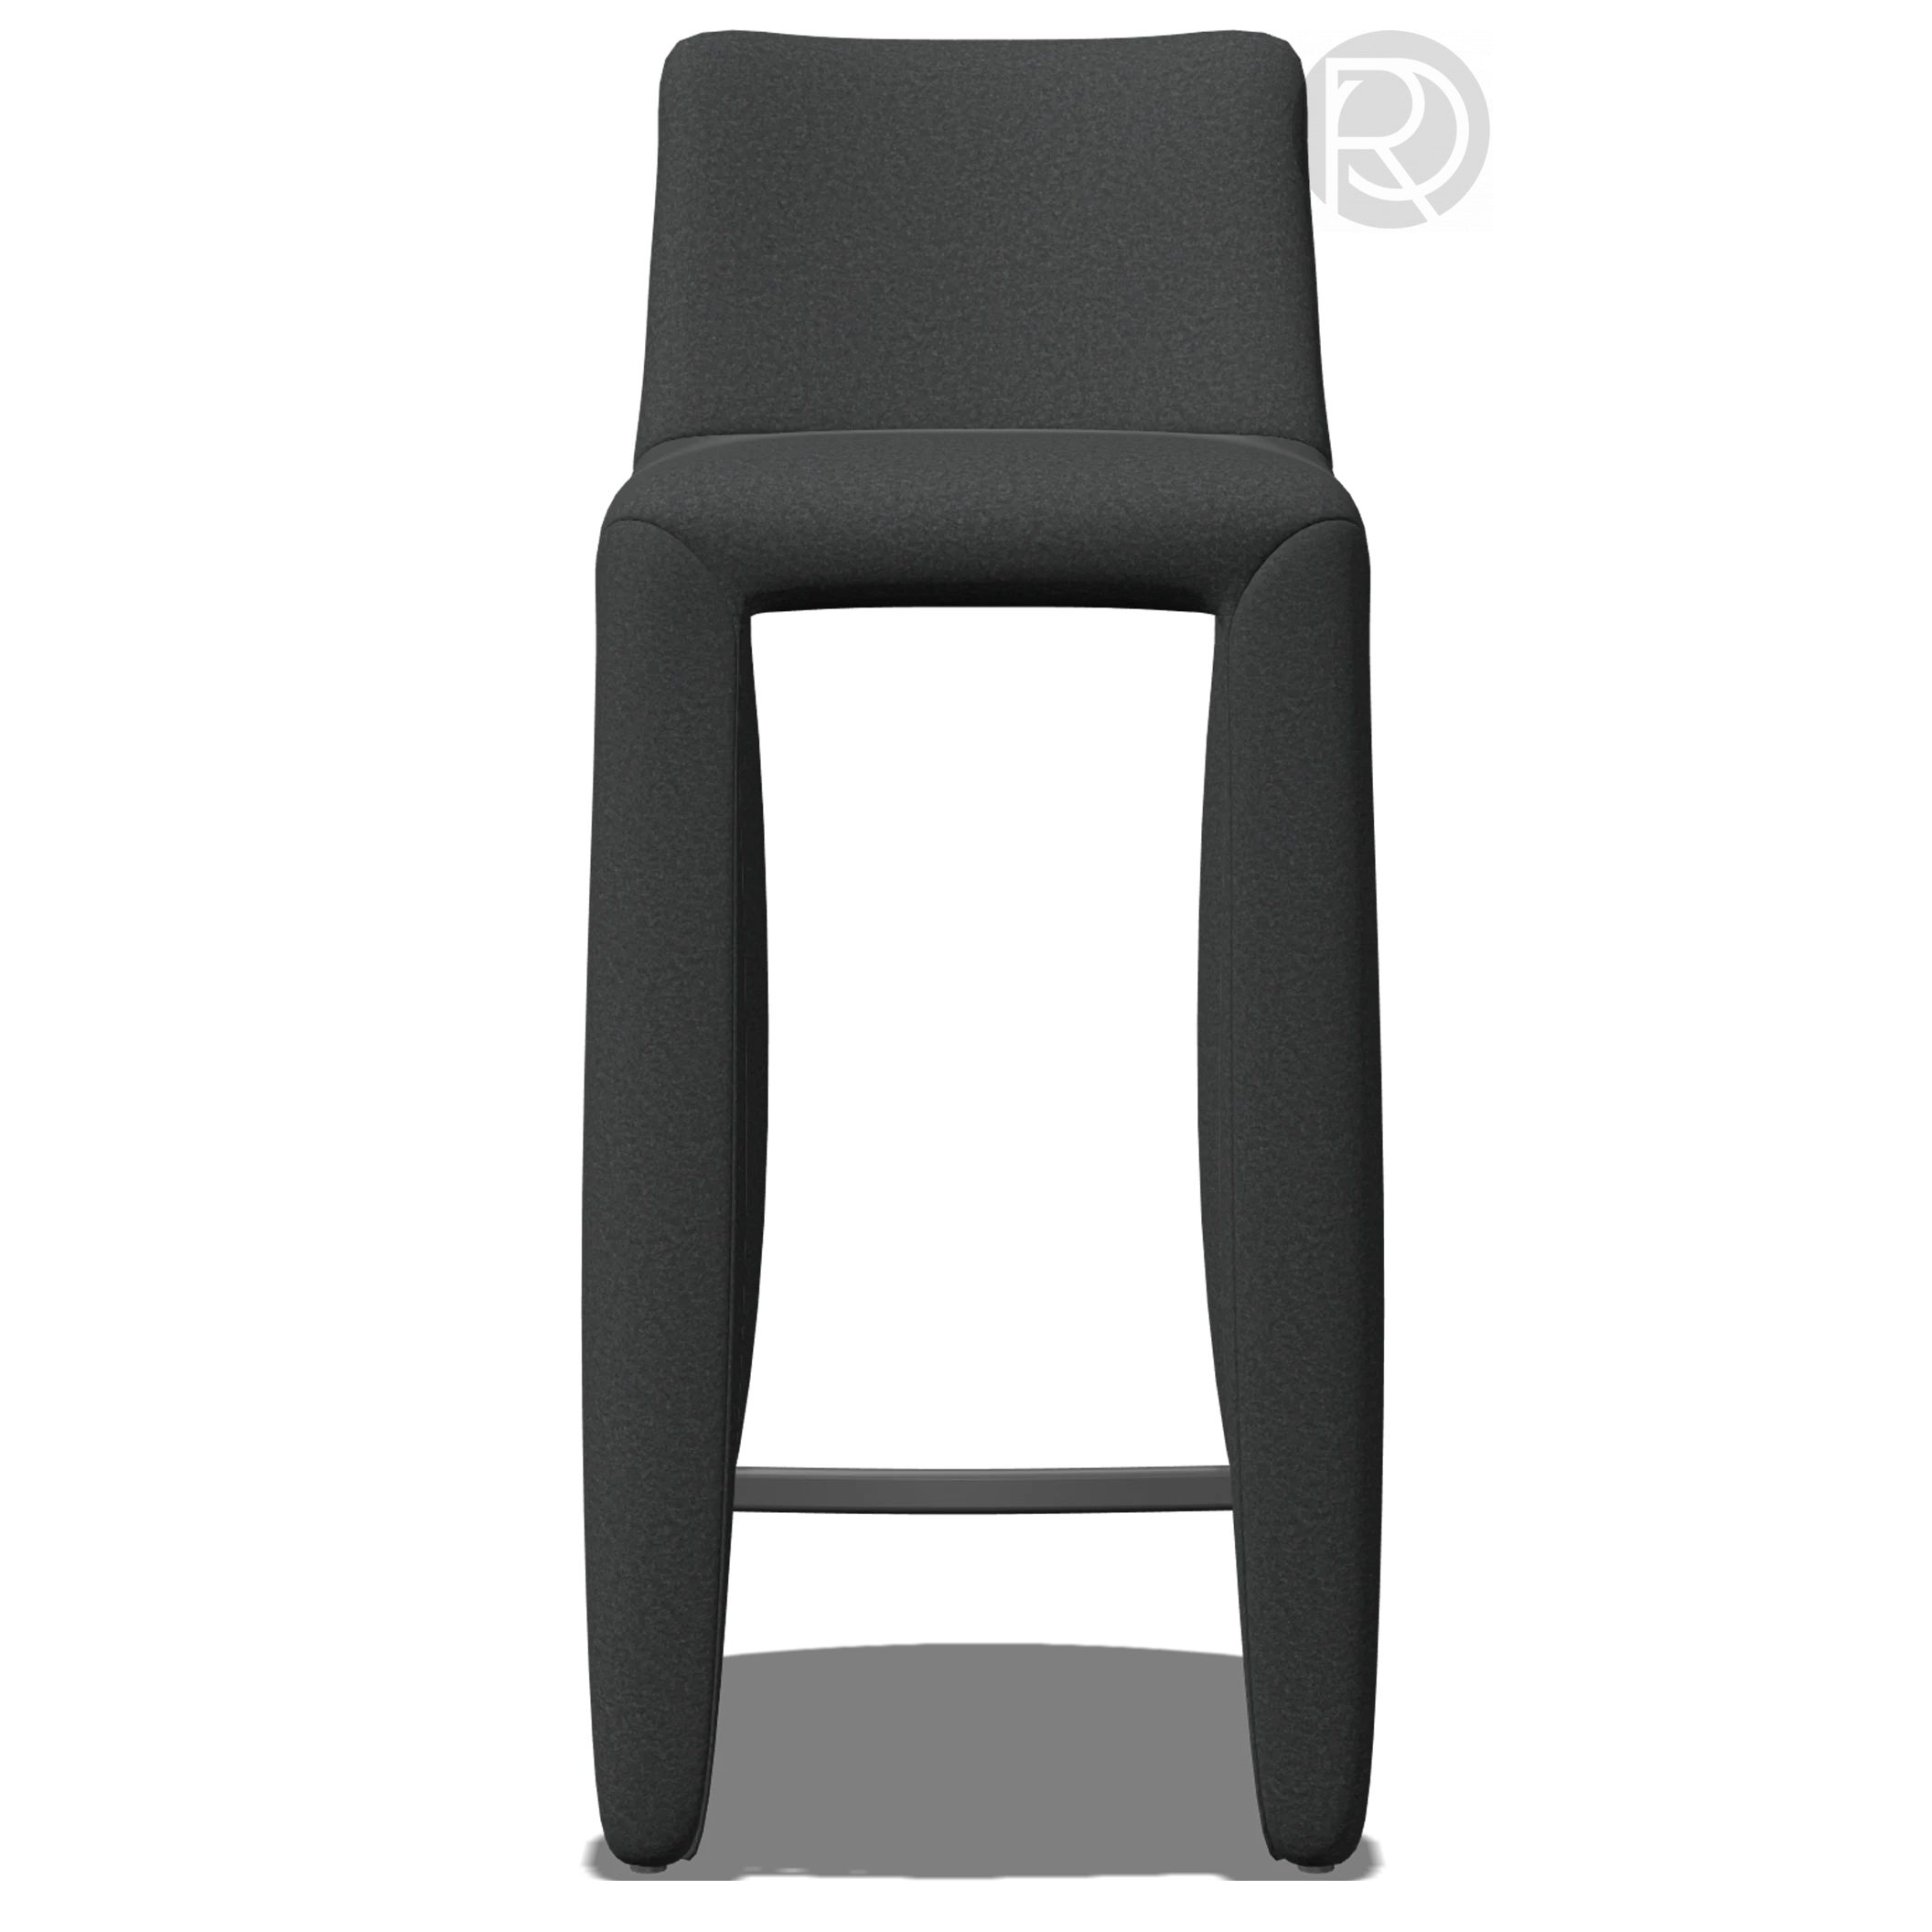 MONSTER Bar stool by Moooi